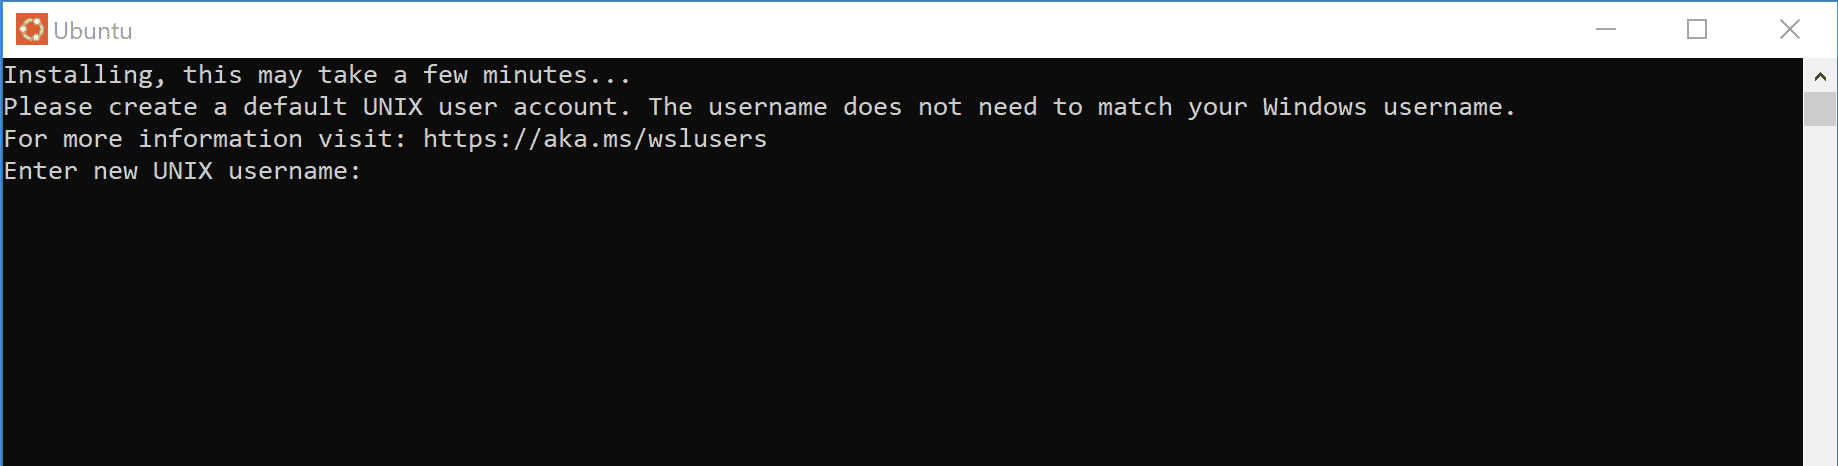 Configuring Login Account In Ubuntu In Wsl2